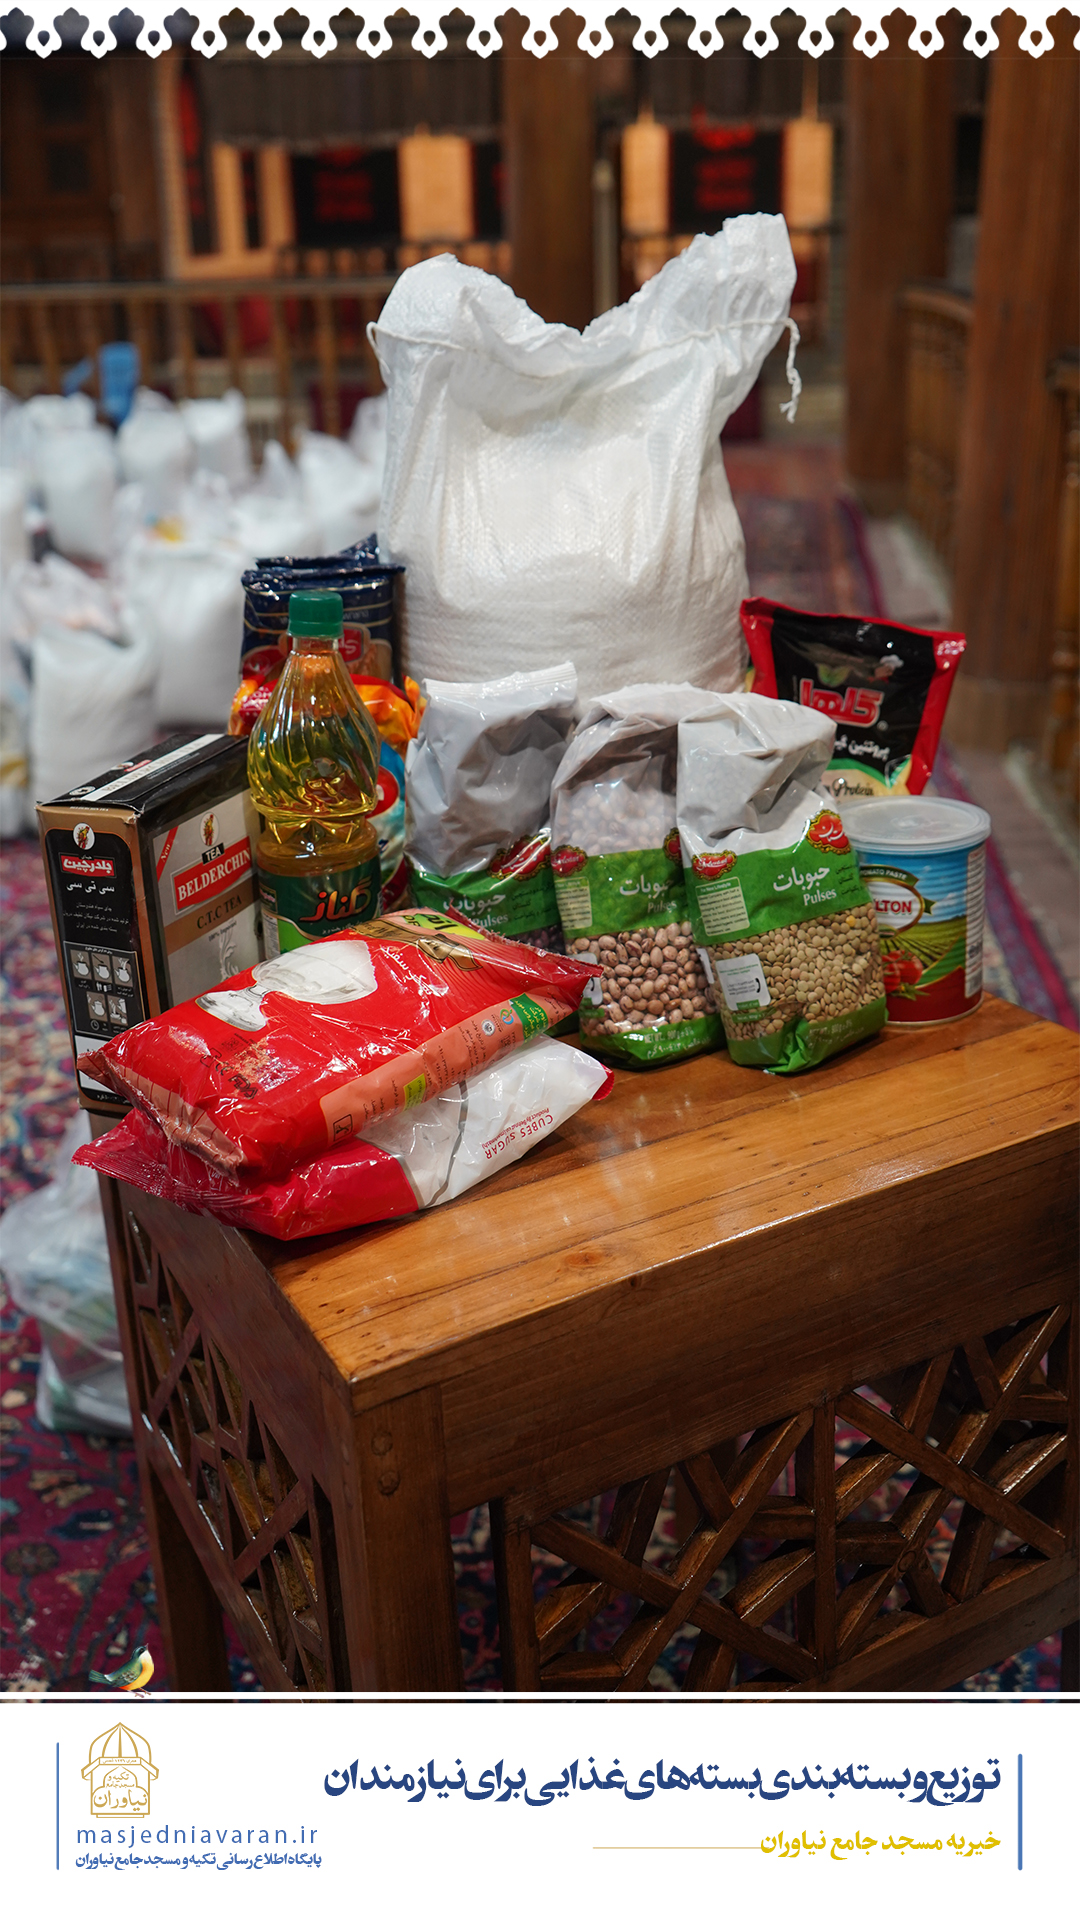 توزیع و بسته بندی بسته های غذایی برای نیازمندان